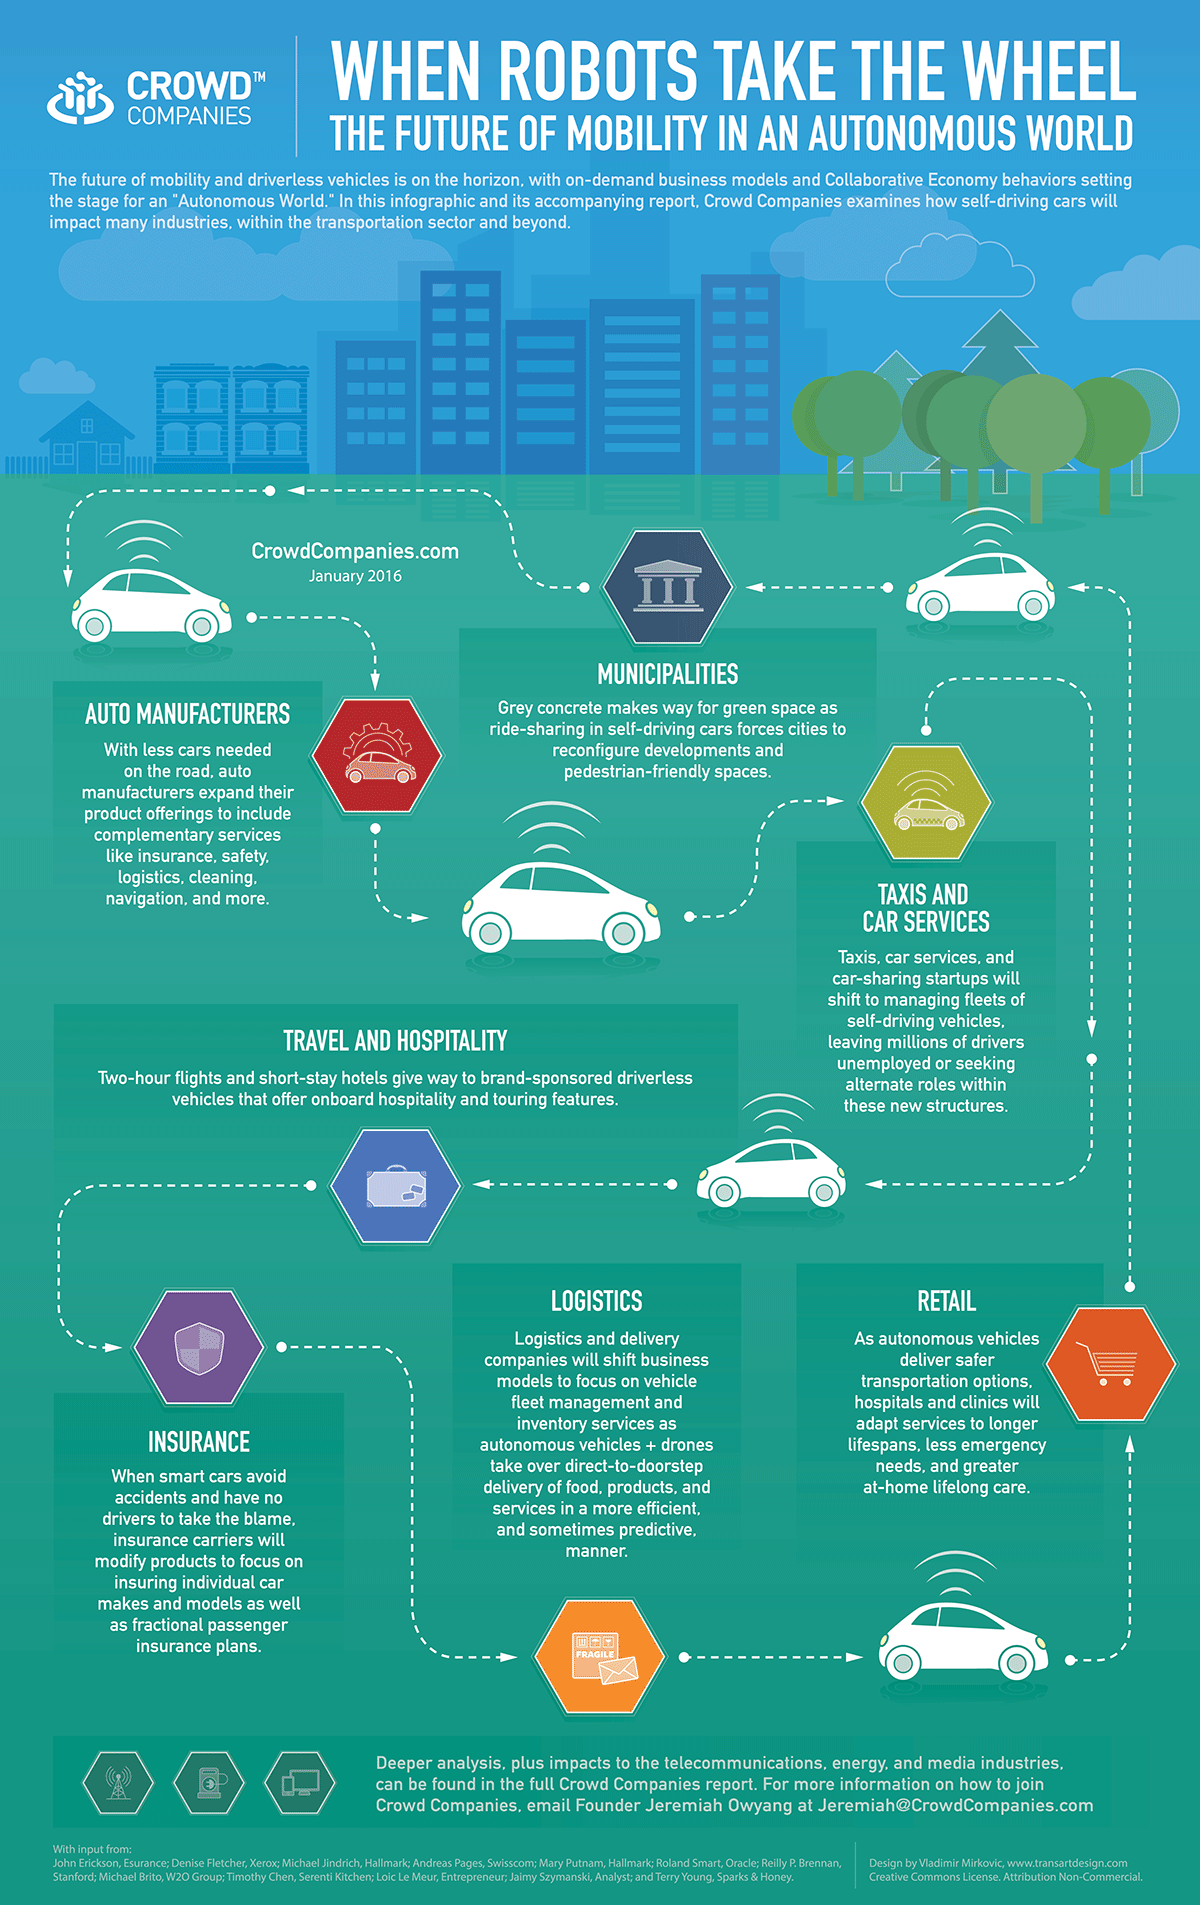 Auto Insurance Chart